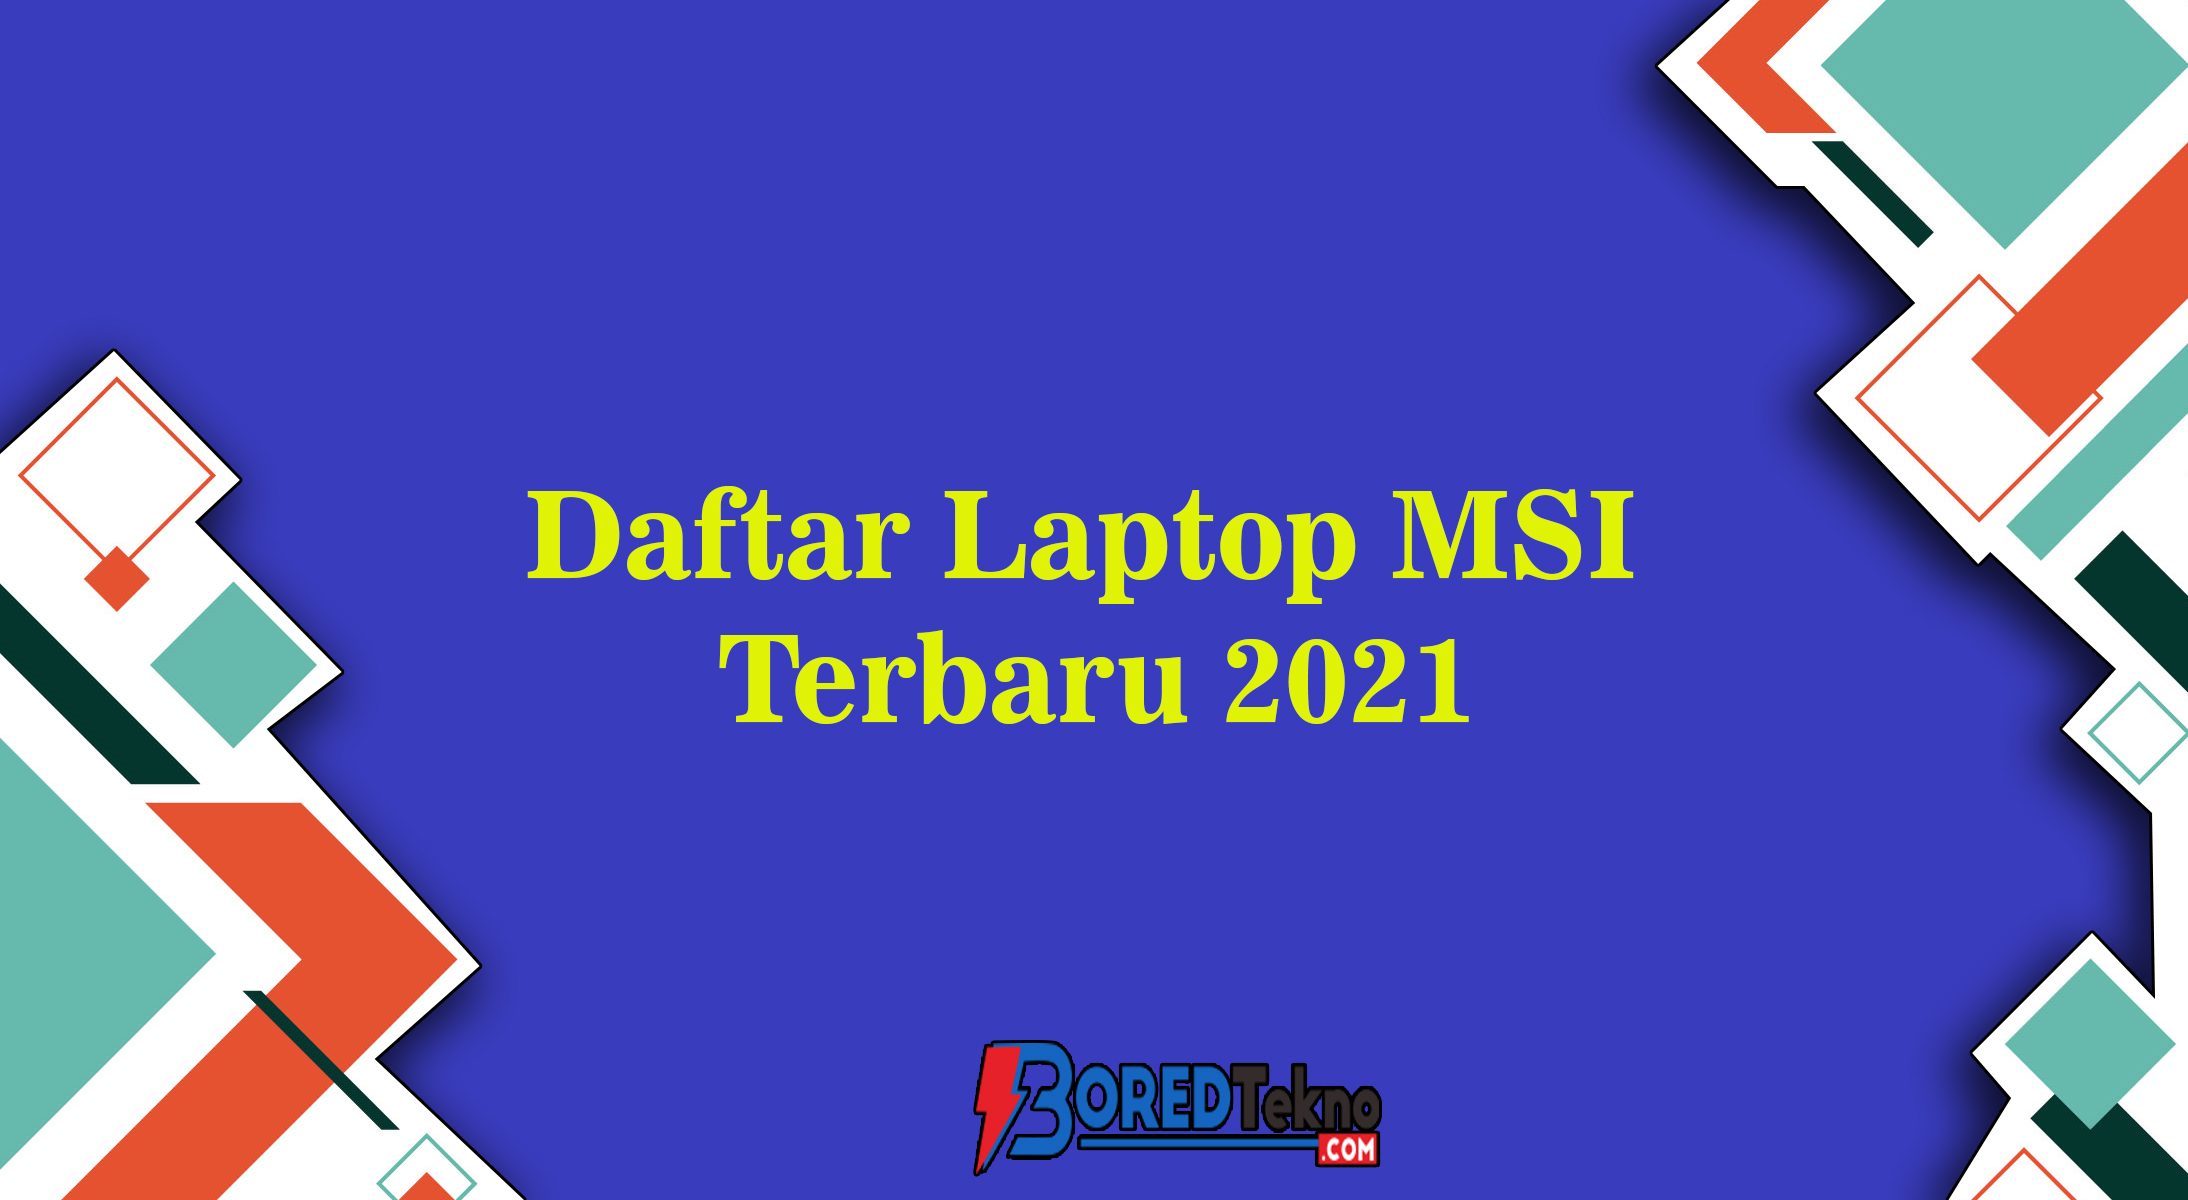 Daftar Laptop MSI Terbaru 2021